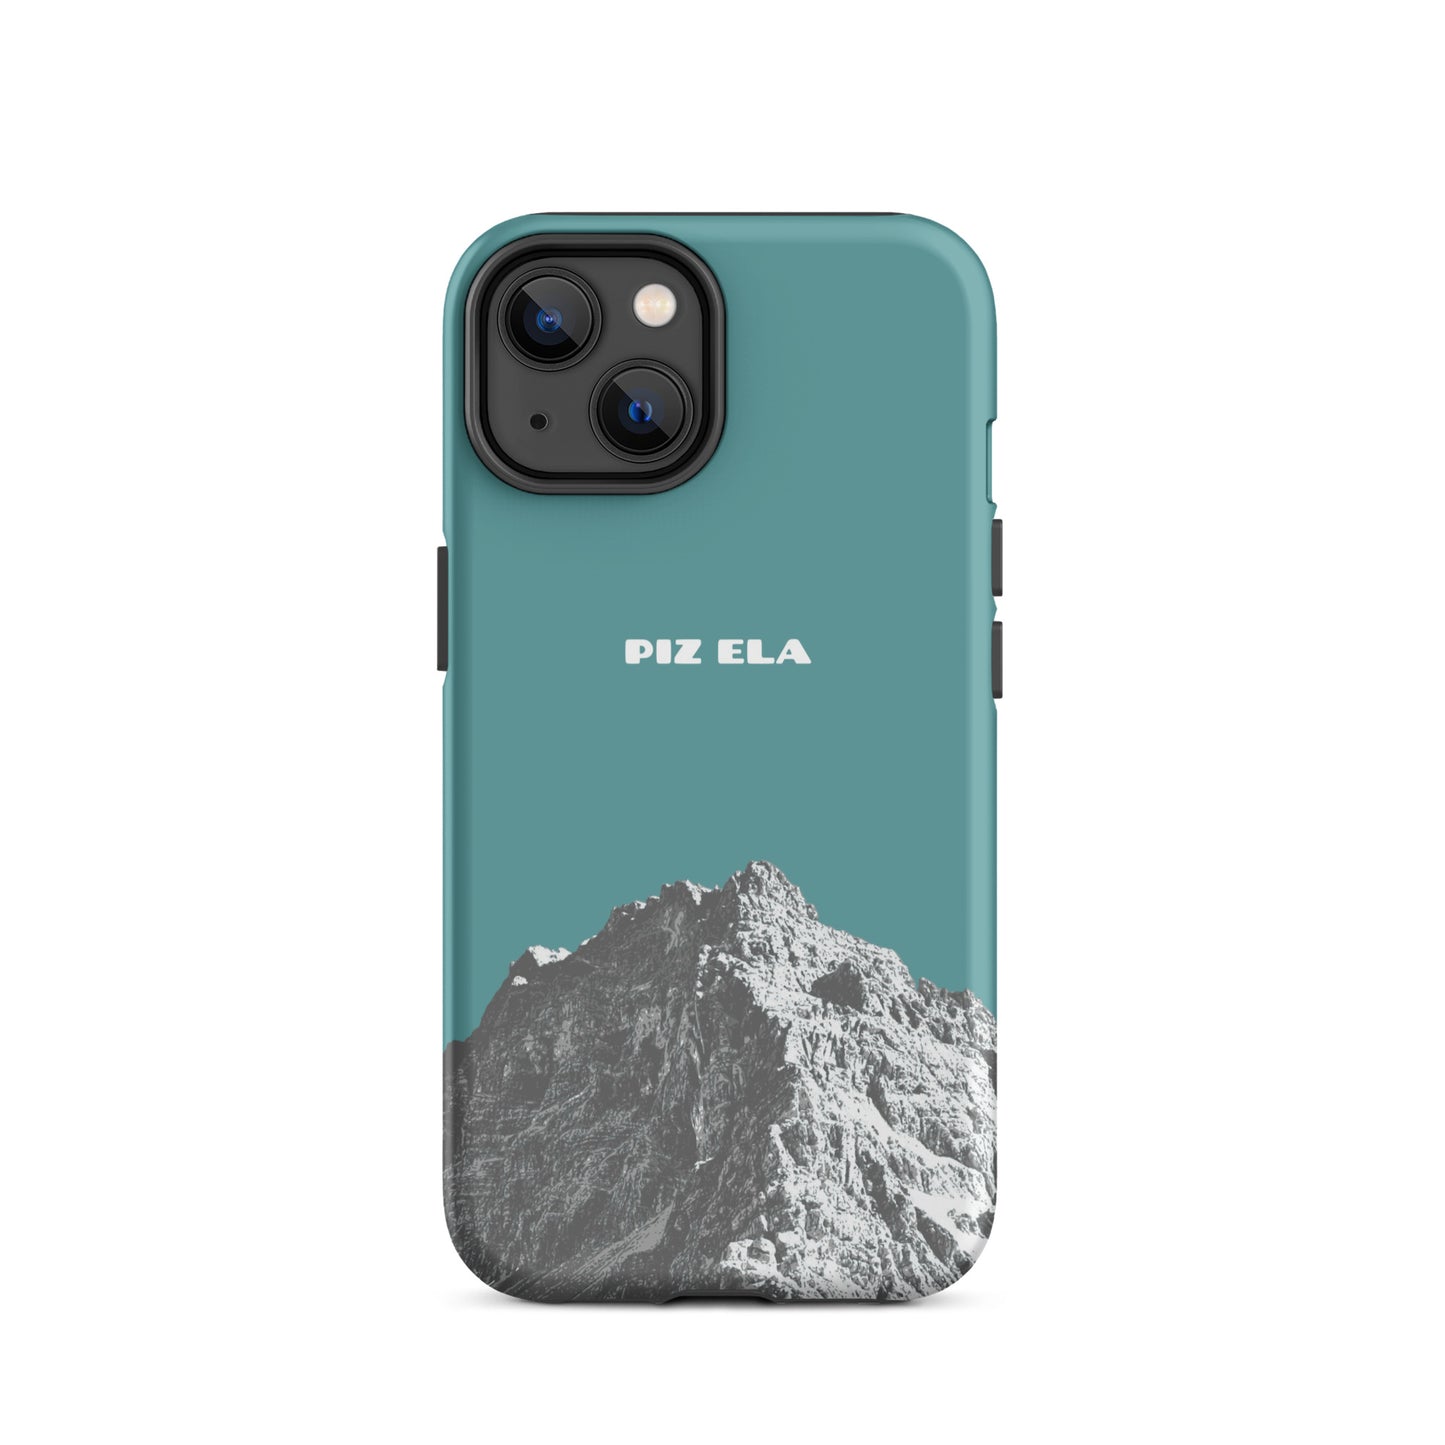 iPhone Case - Piz Ela - Kadettenblau